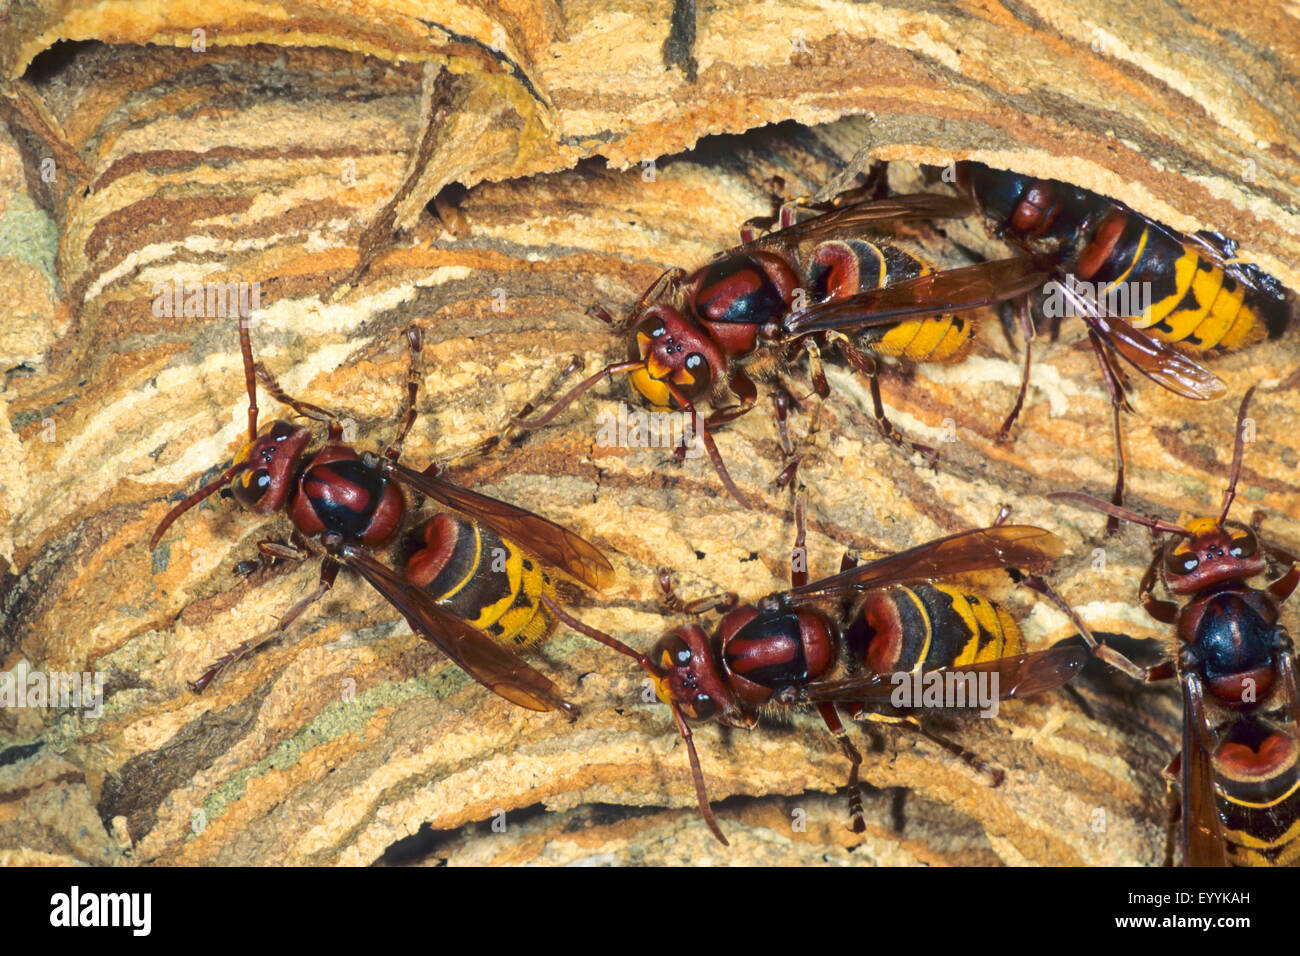 hornet, brown hornet, European hornet (Vespa crabro), hornets in a hornet nest, Germany Stock Photo